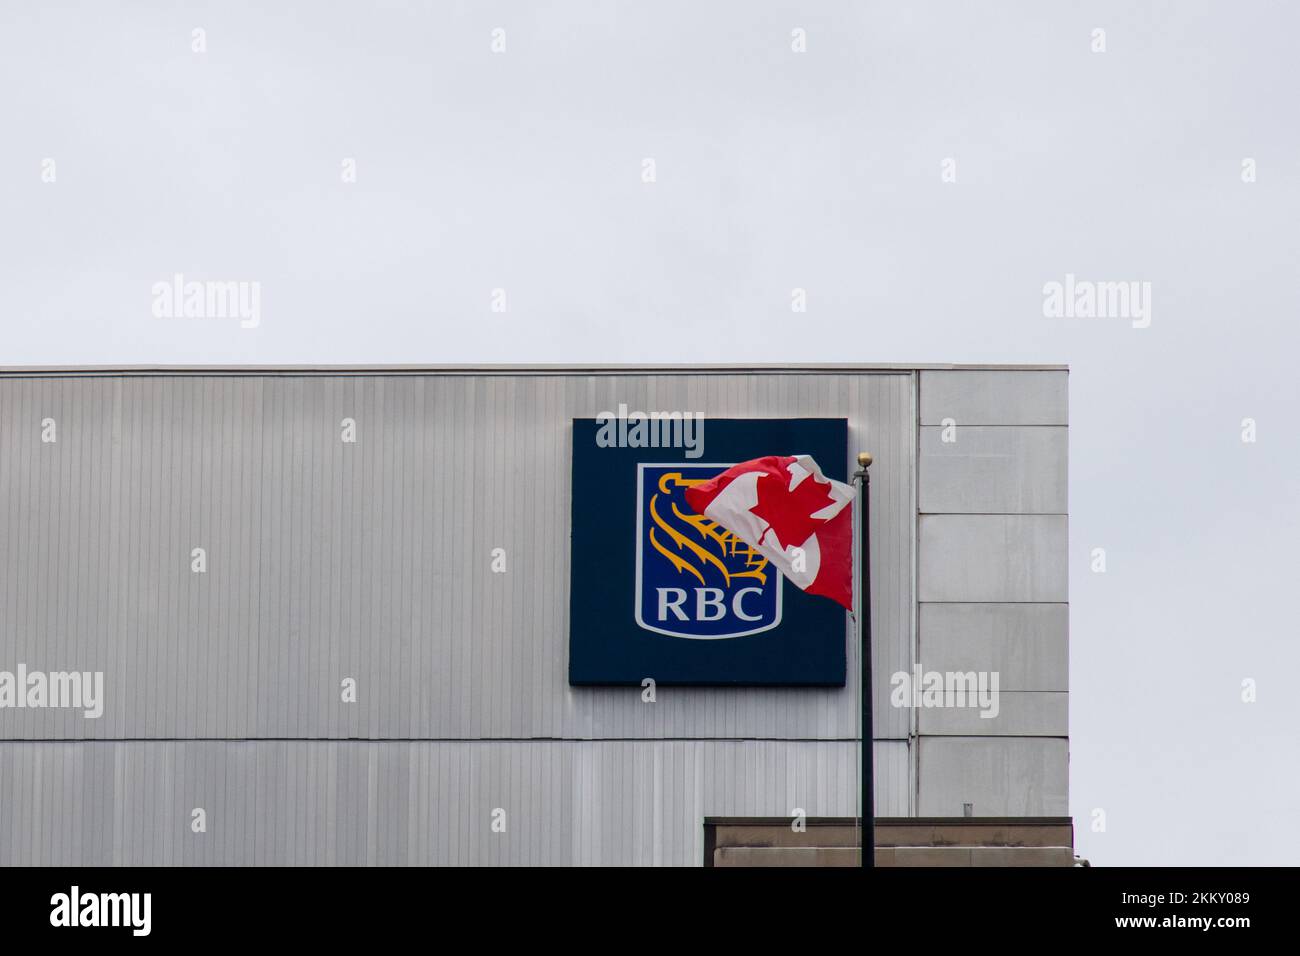 La bandera canadiense ondea frente al logotipo de la RBC, Royal Bank of Canada, en el lado de un edificio de oficinas en Ottawa, la capital de Canadá. Foto de stock